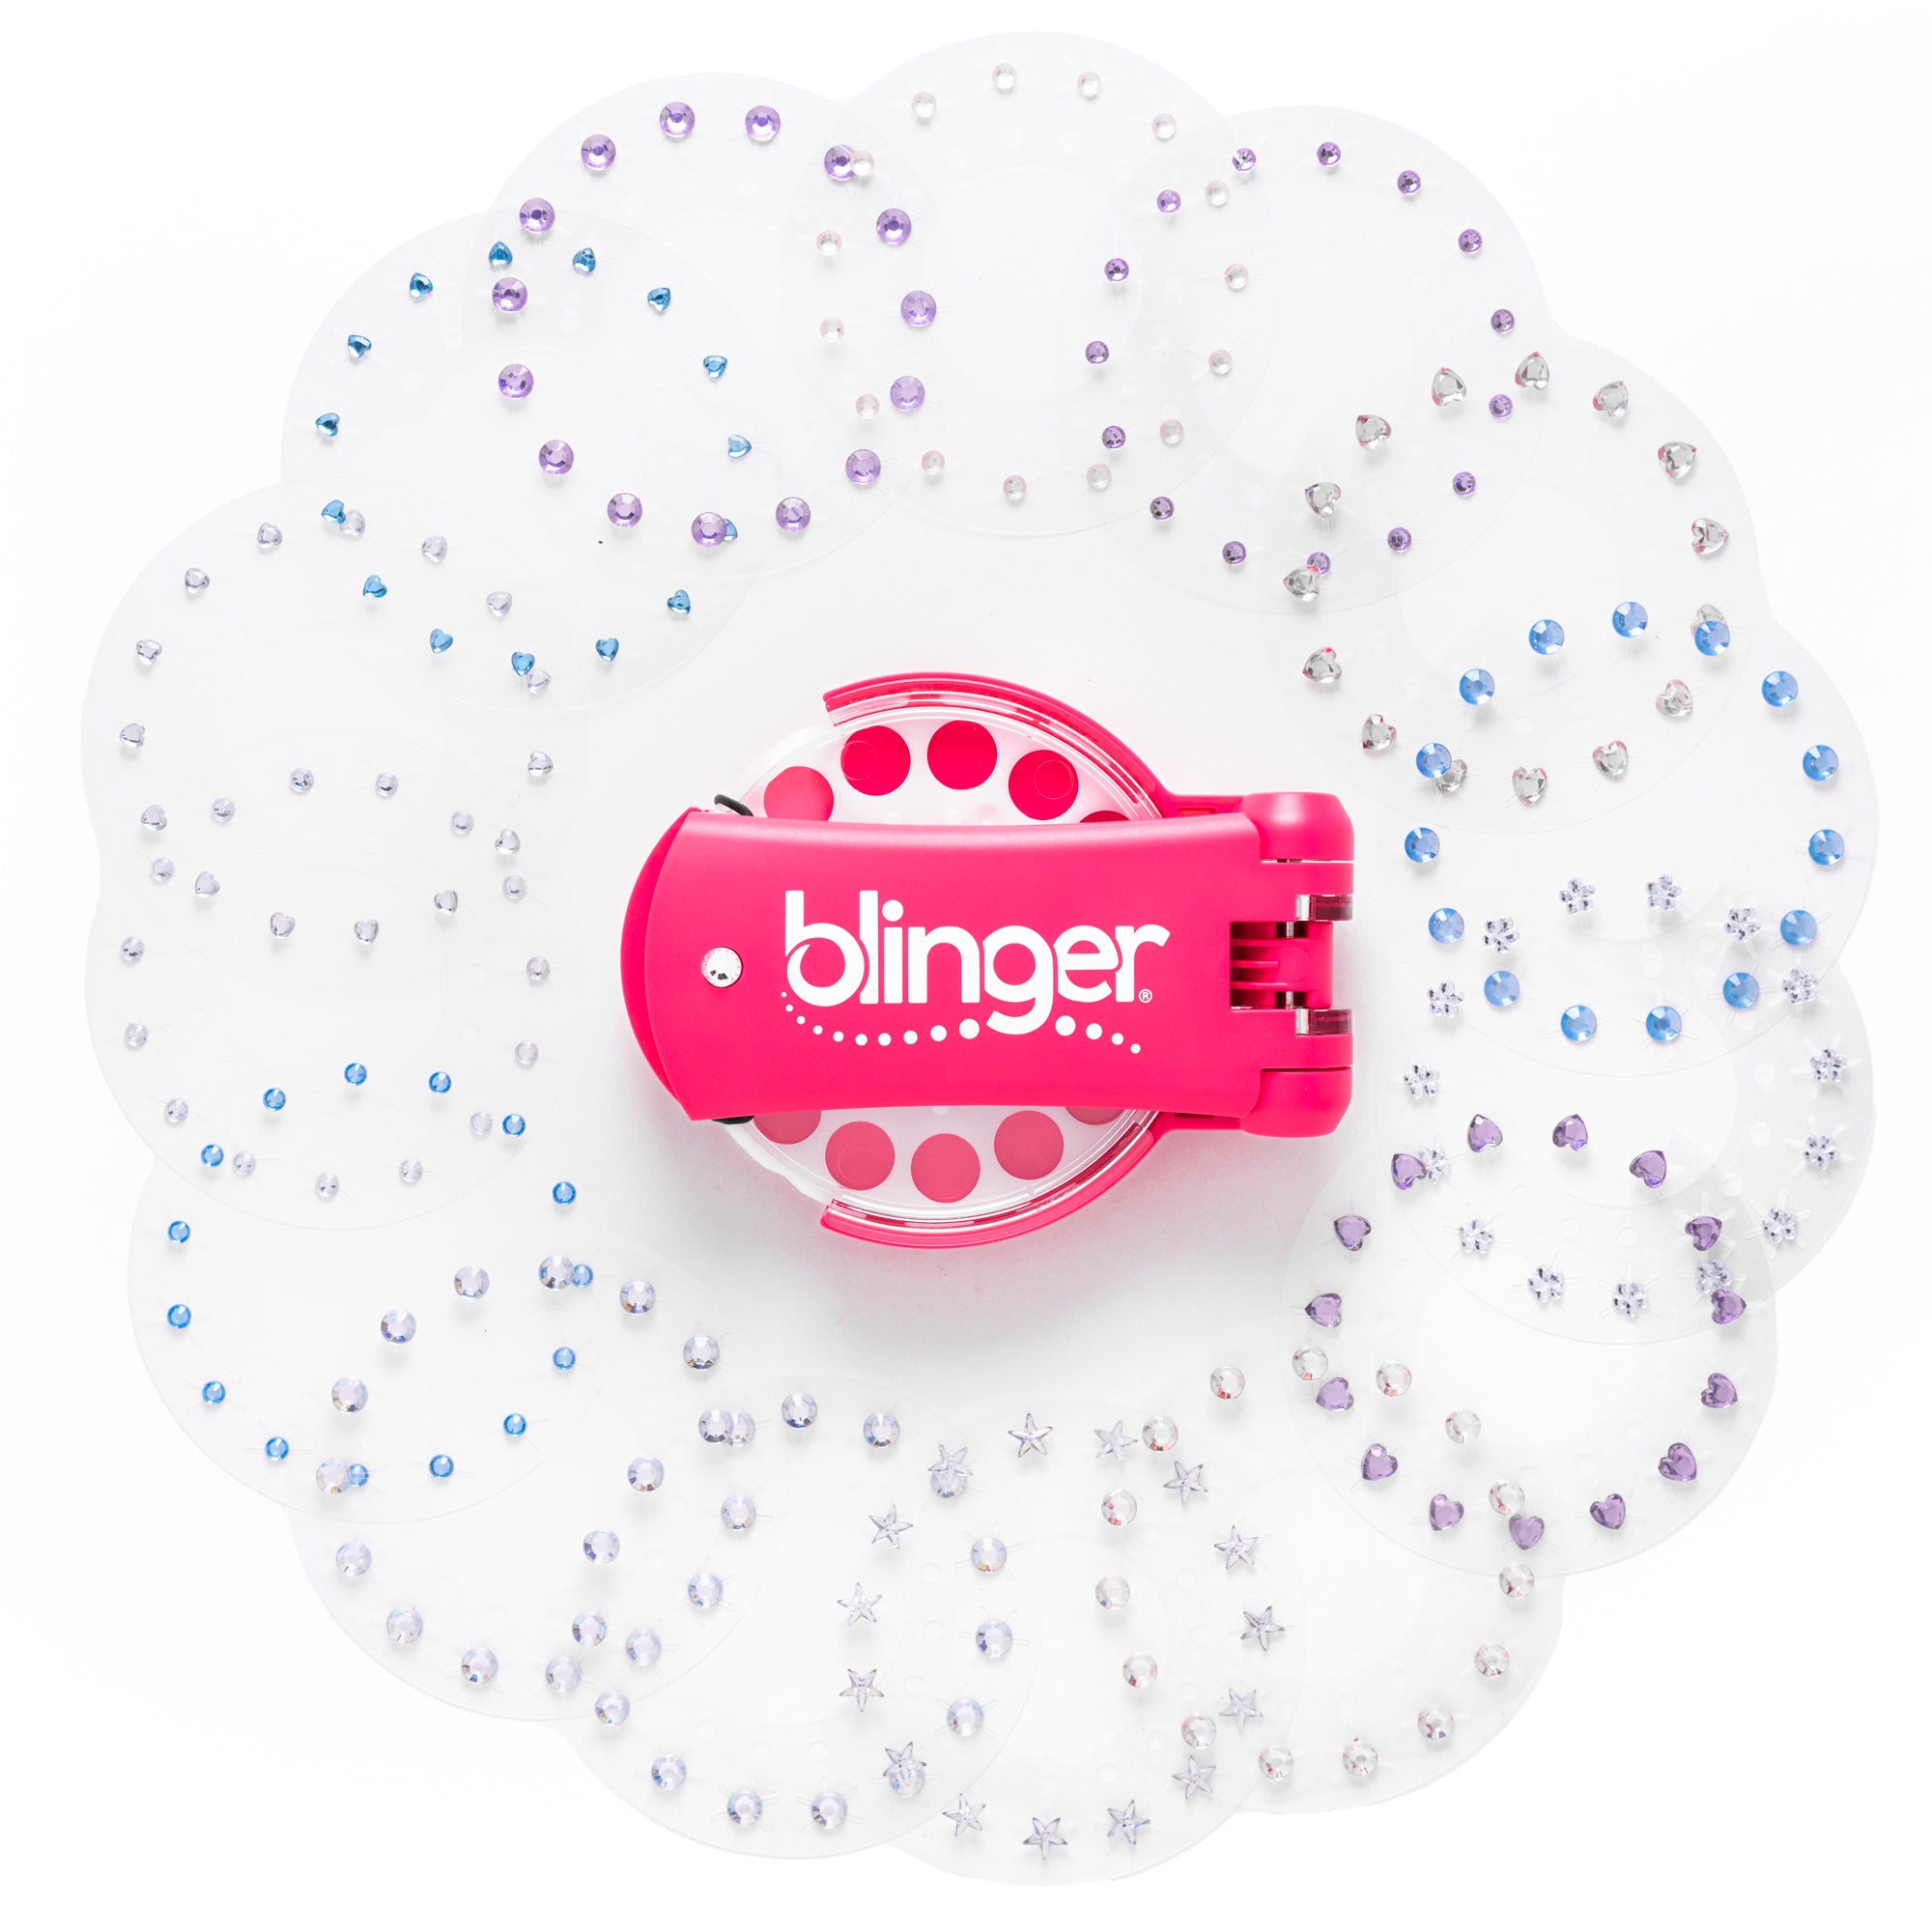 blinger® kids Glam Collection Starter Kit with Gem Stamper + 225 Colorful Gems